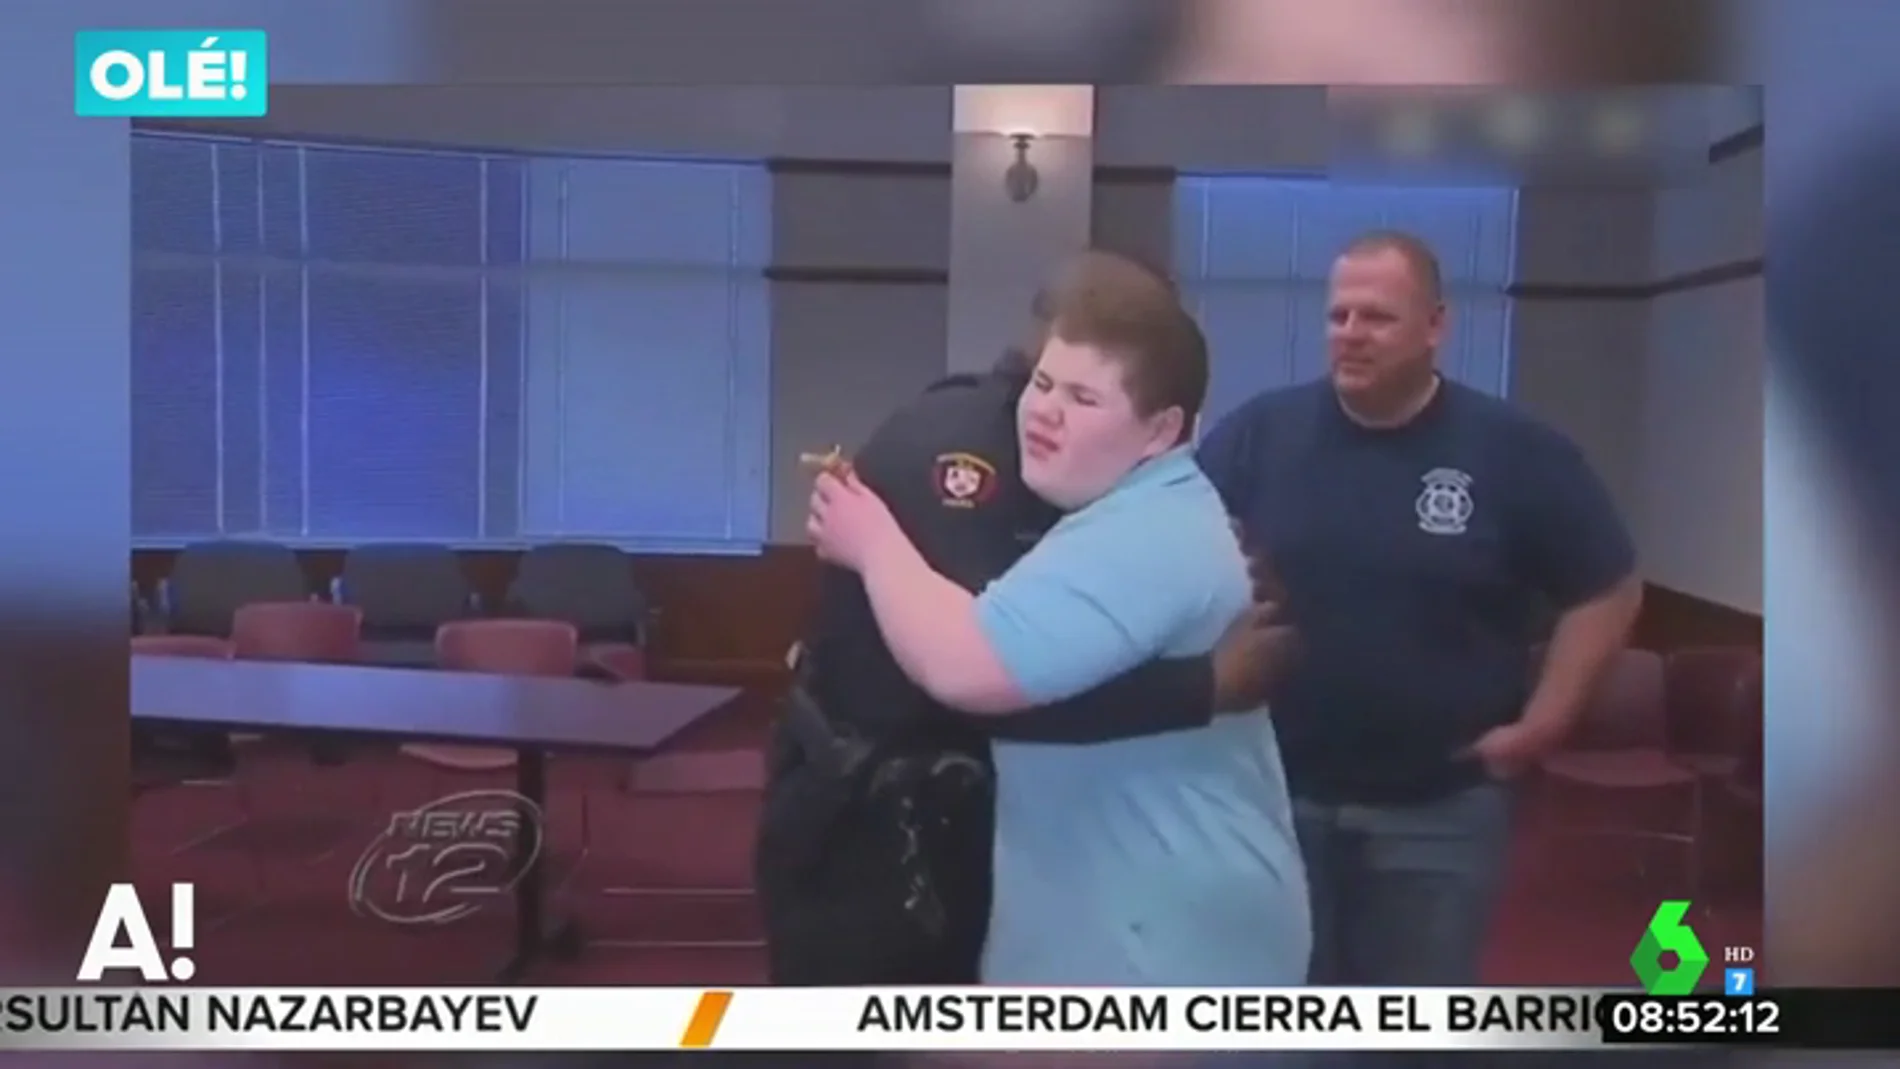 La Policía ayuda a un niño con autismo a recuperar su peluche tras recibir su llamada